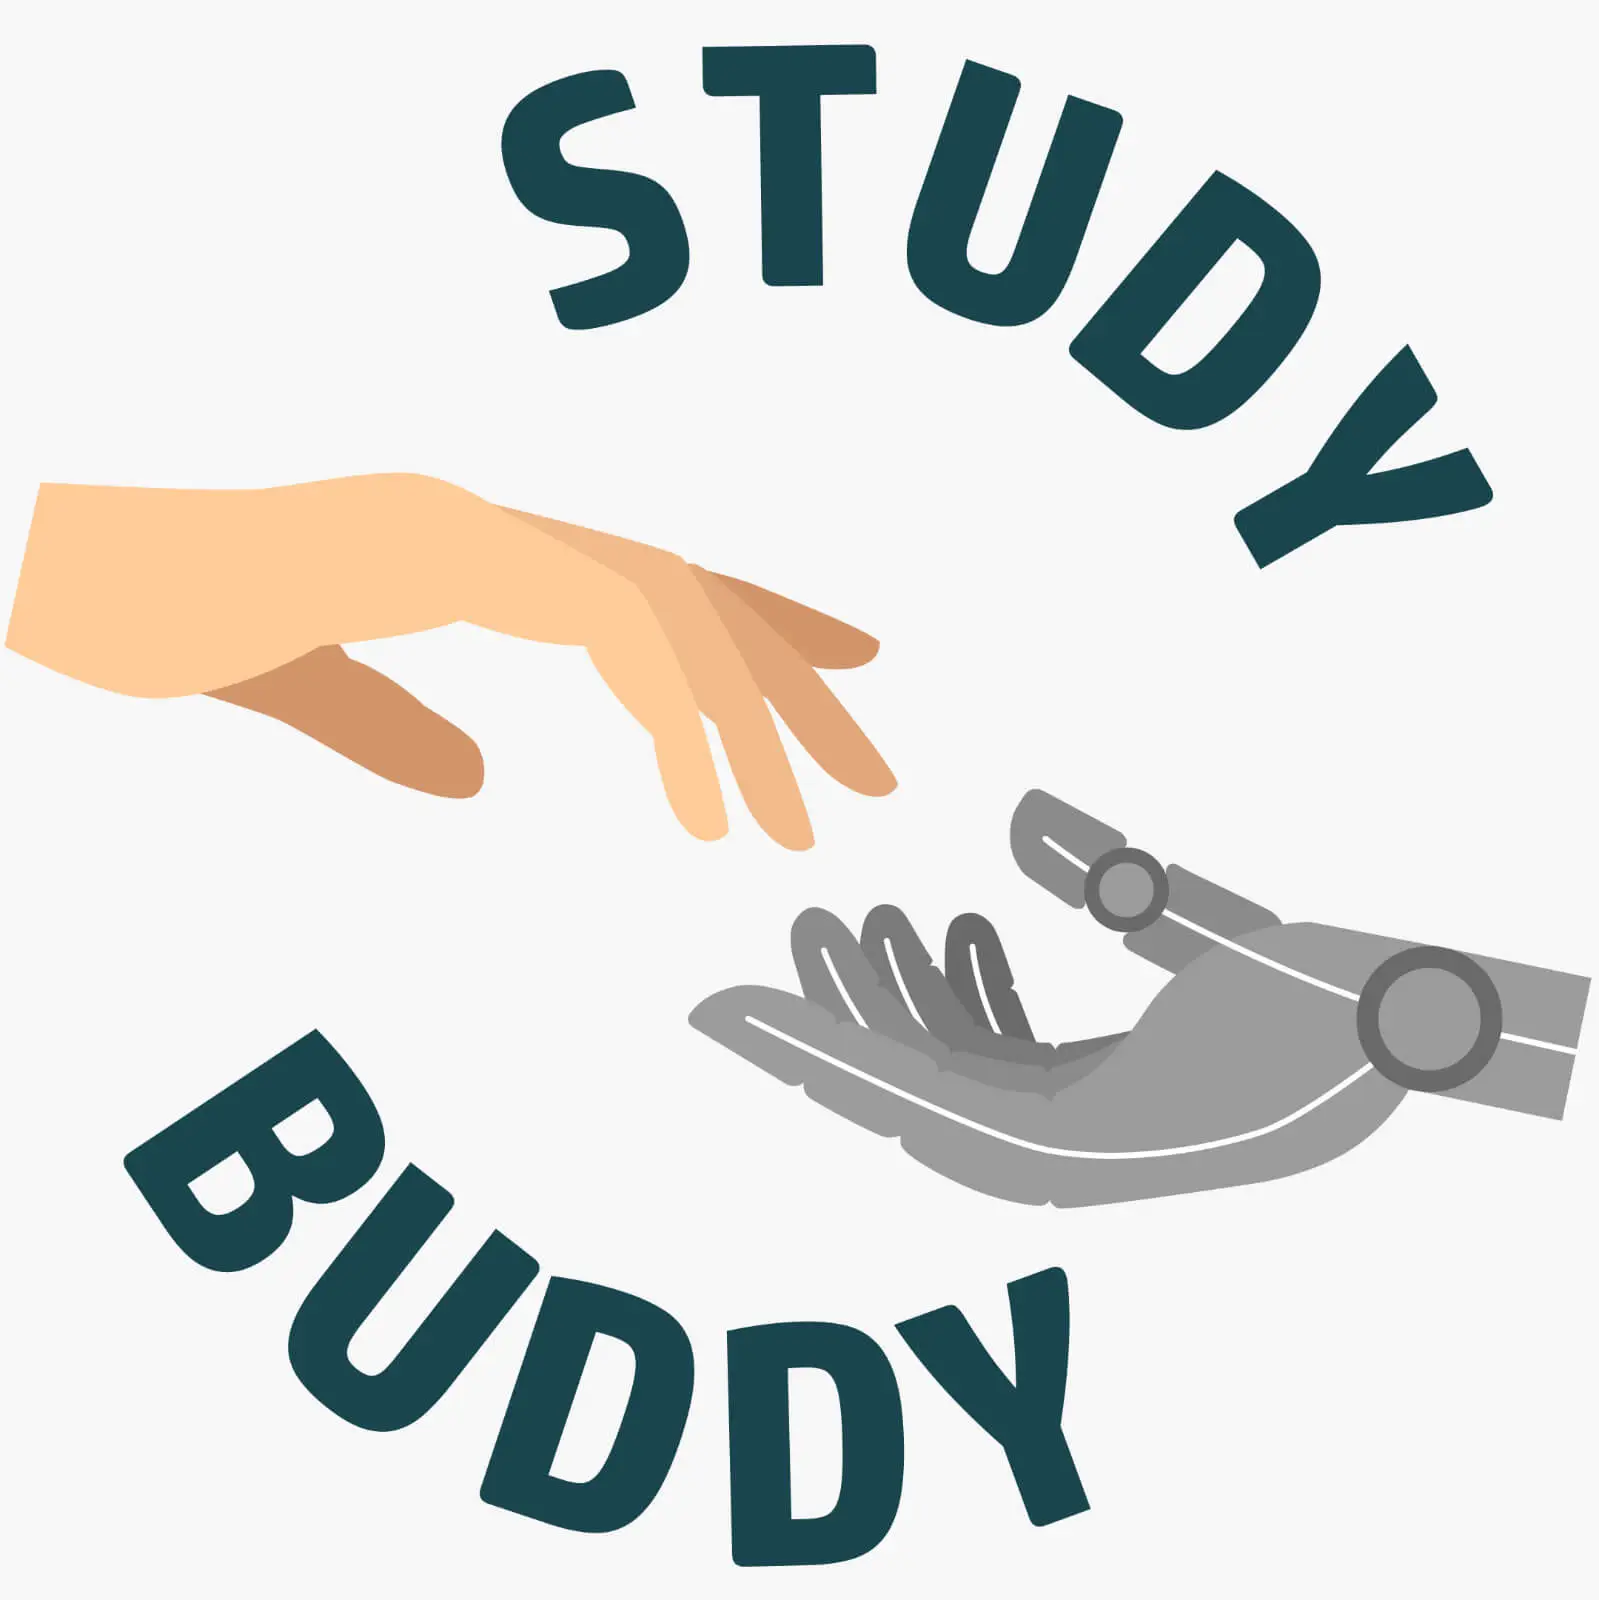 Study Buddy Logo